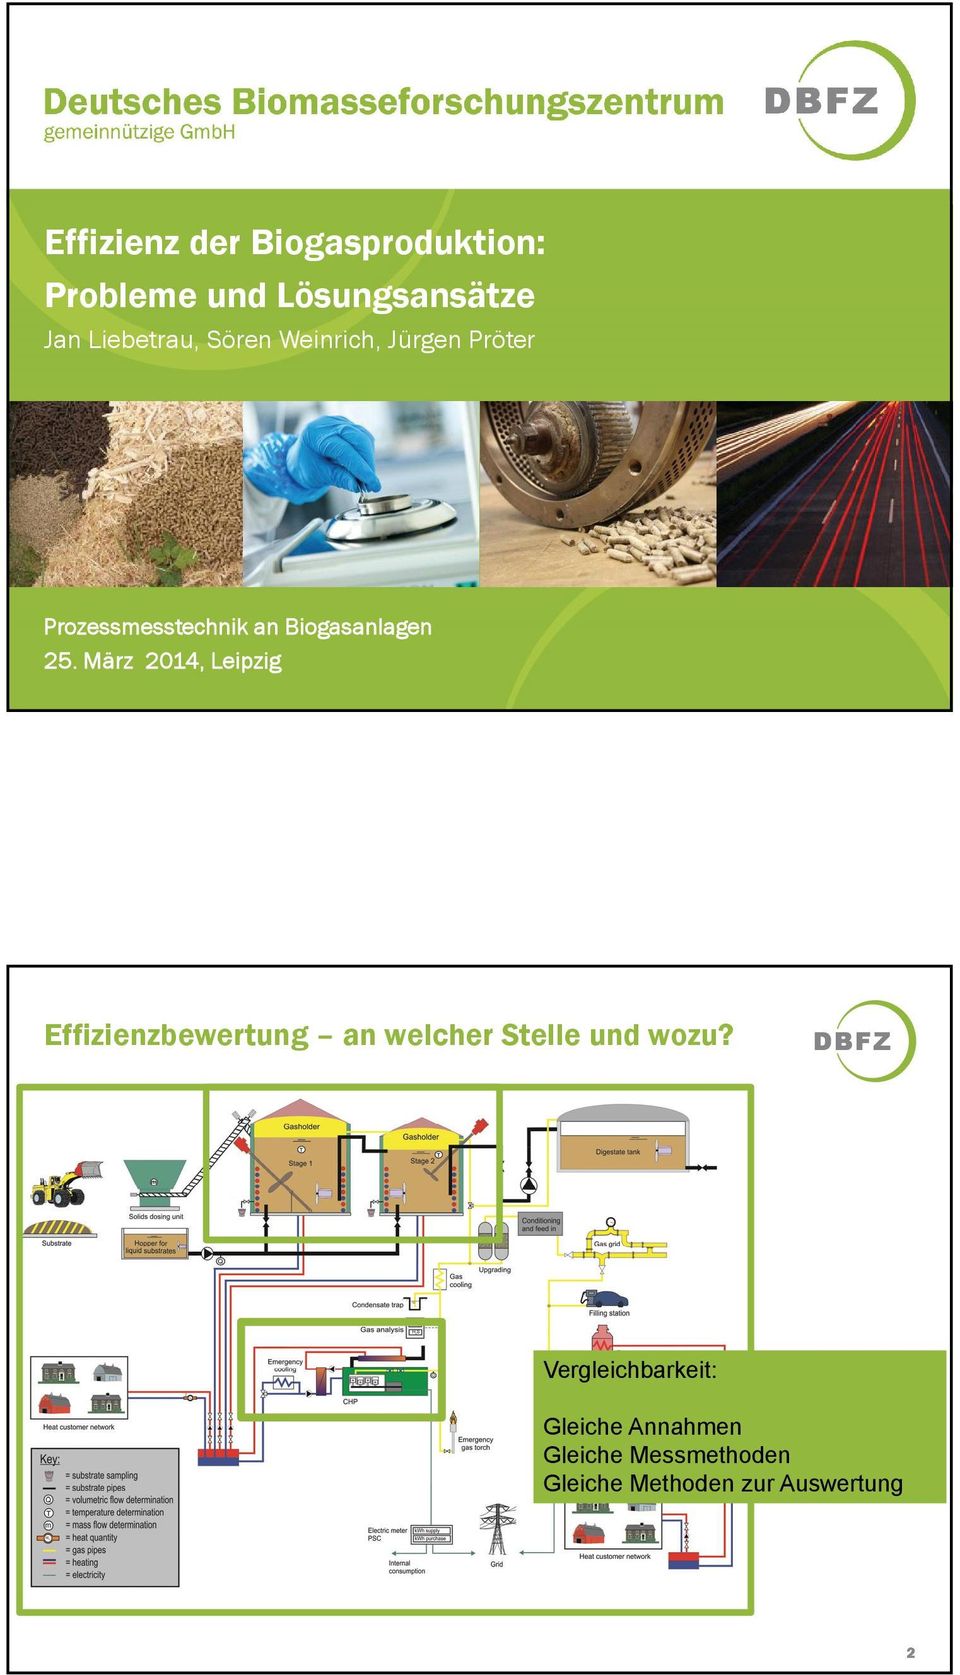 März 2014, Leipzig Effizienzbewertung an welcher Stelle und wozu?